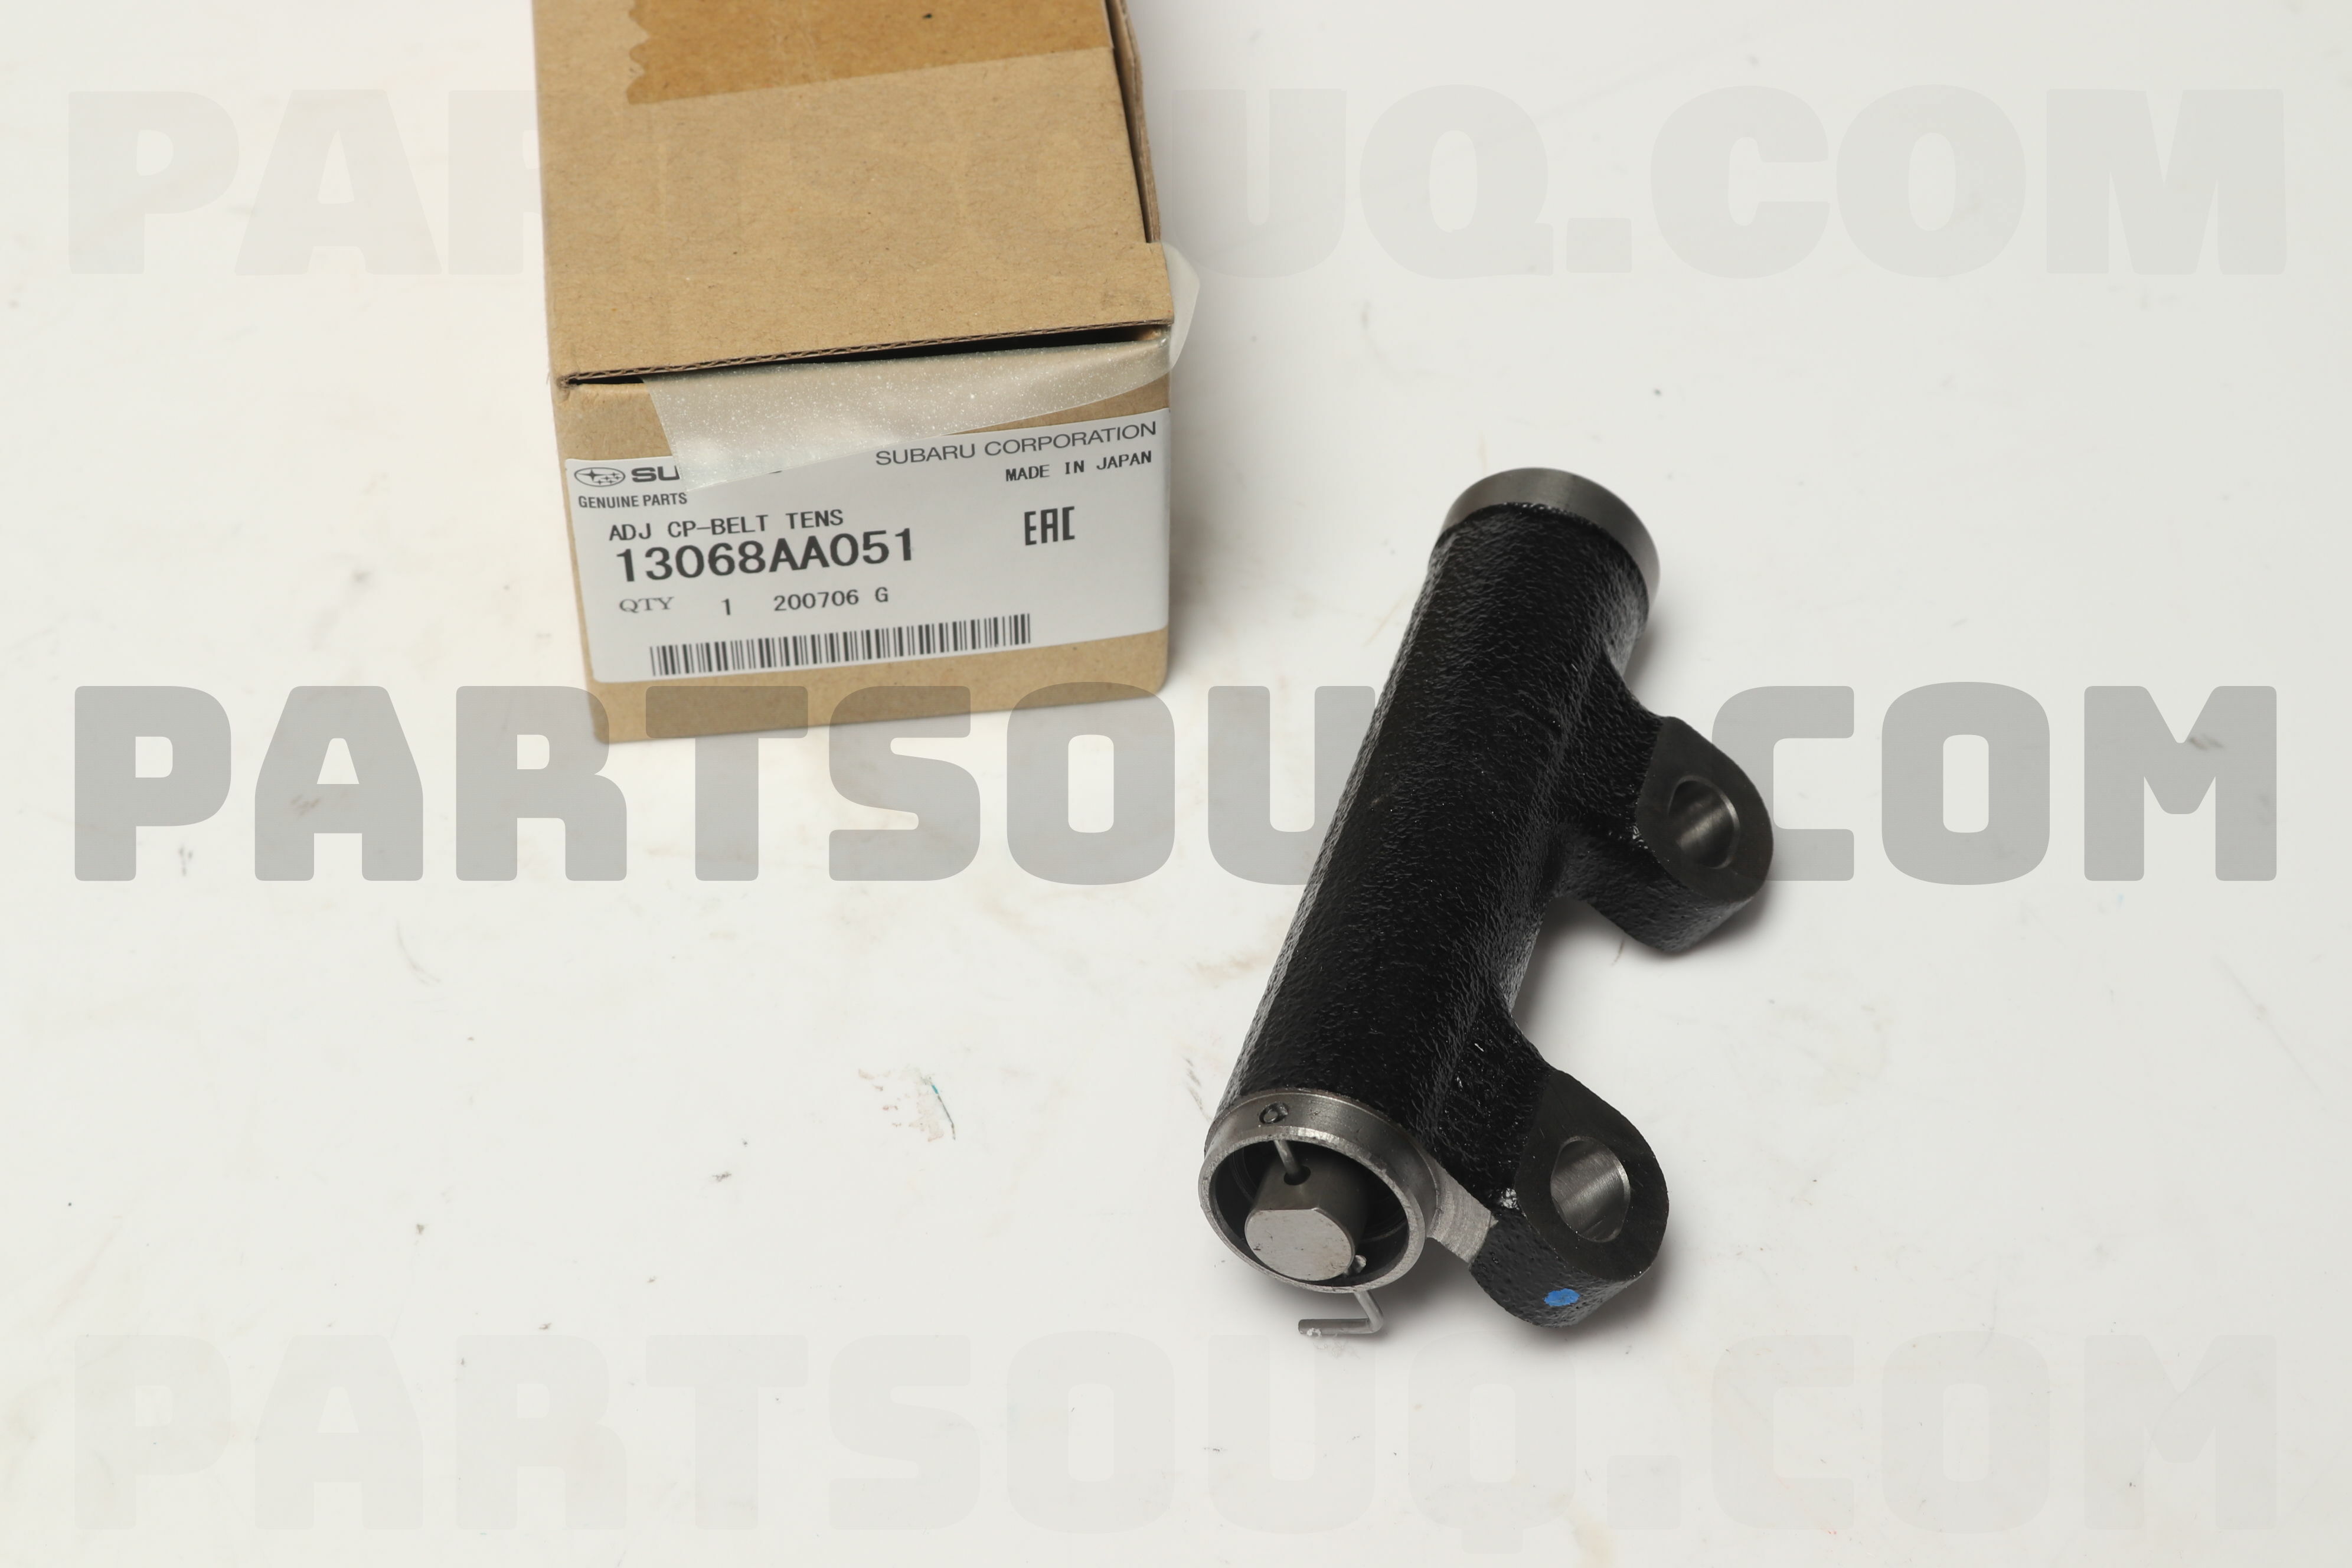 ADJ CP-BELT TENS 13068AA027 | Subaru Parts | PartSouq